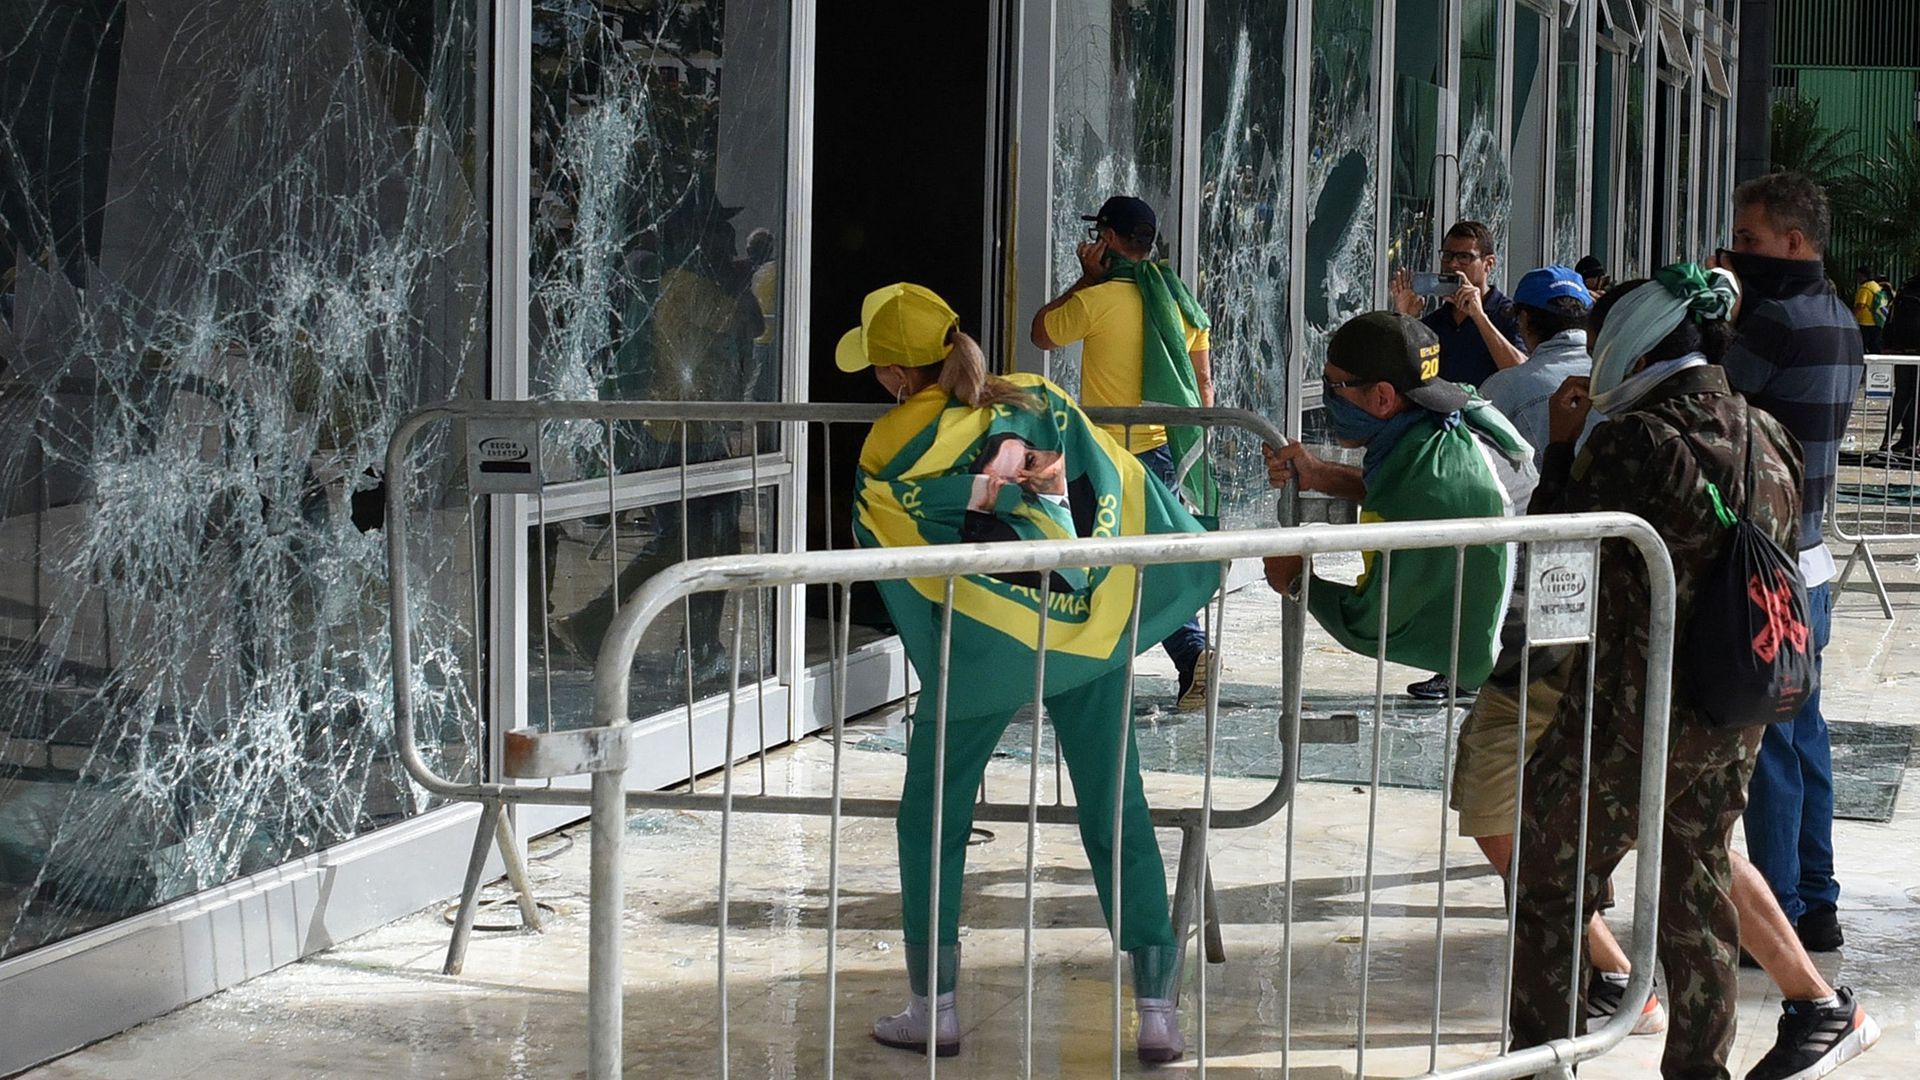 rioters in Brazil wearing Brazilian flags break large windows in Brasilia 